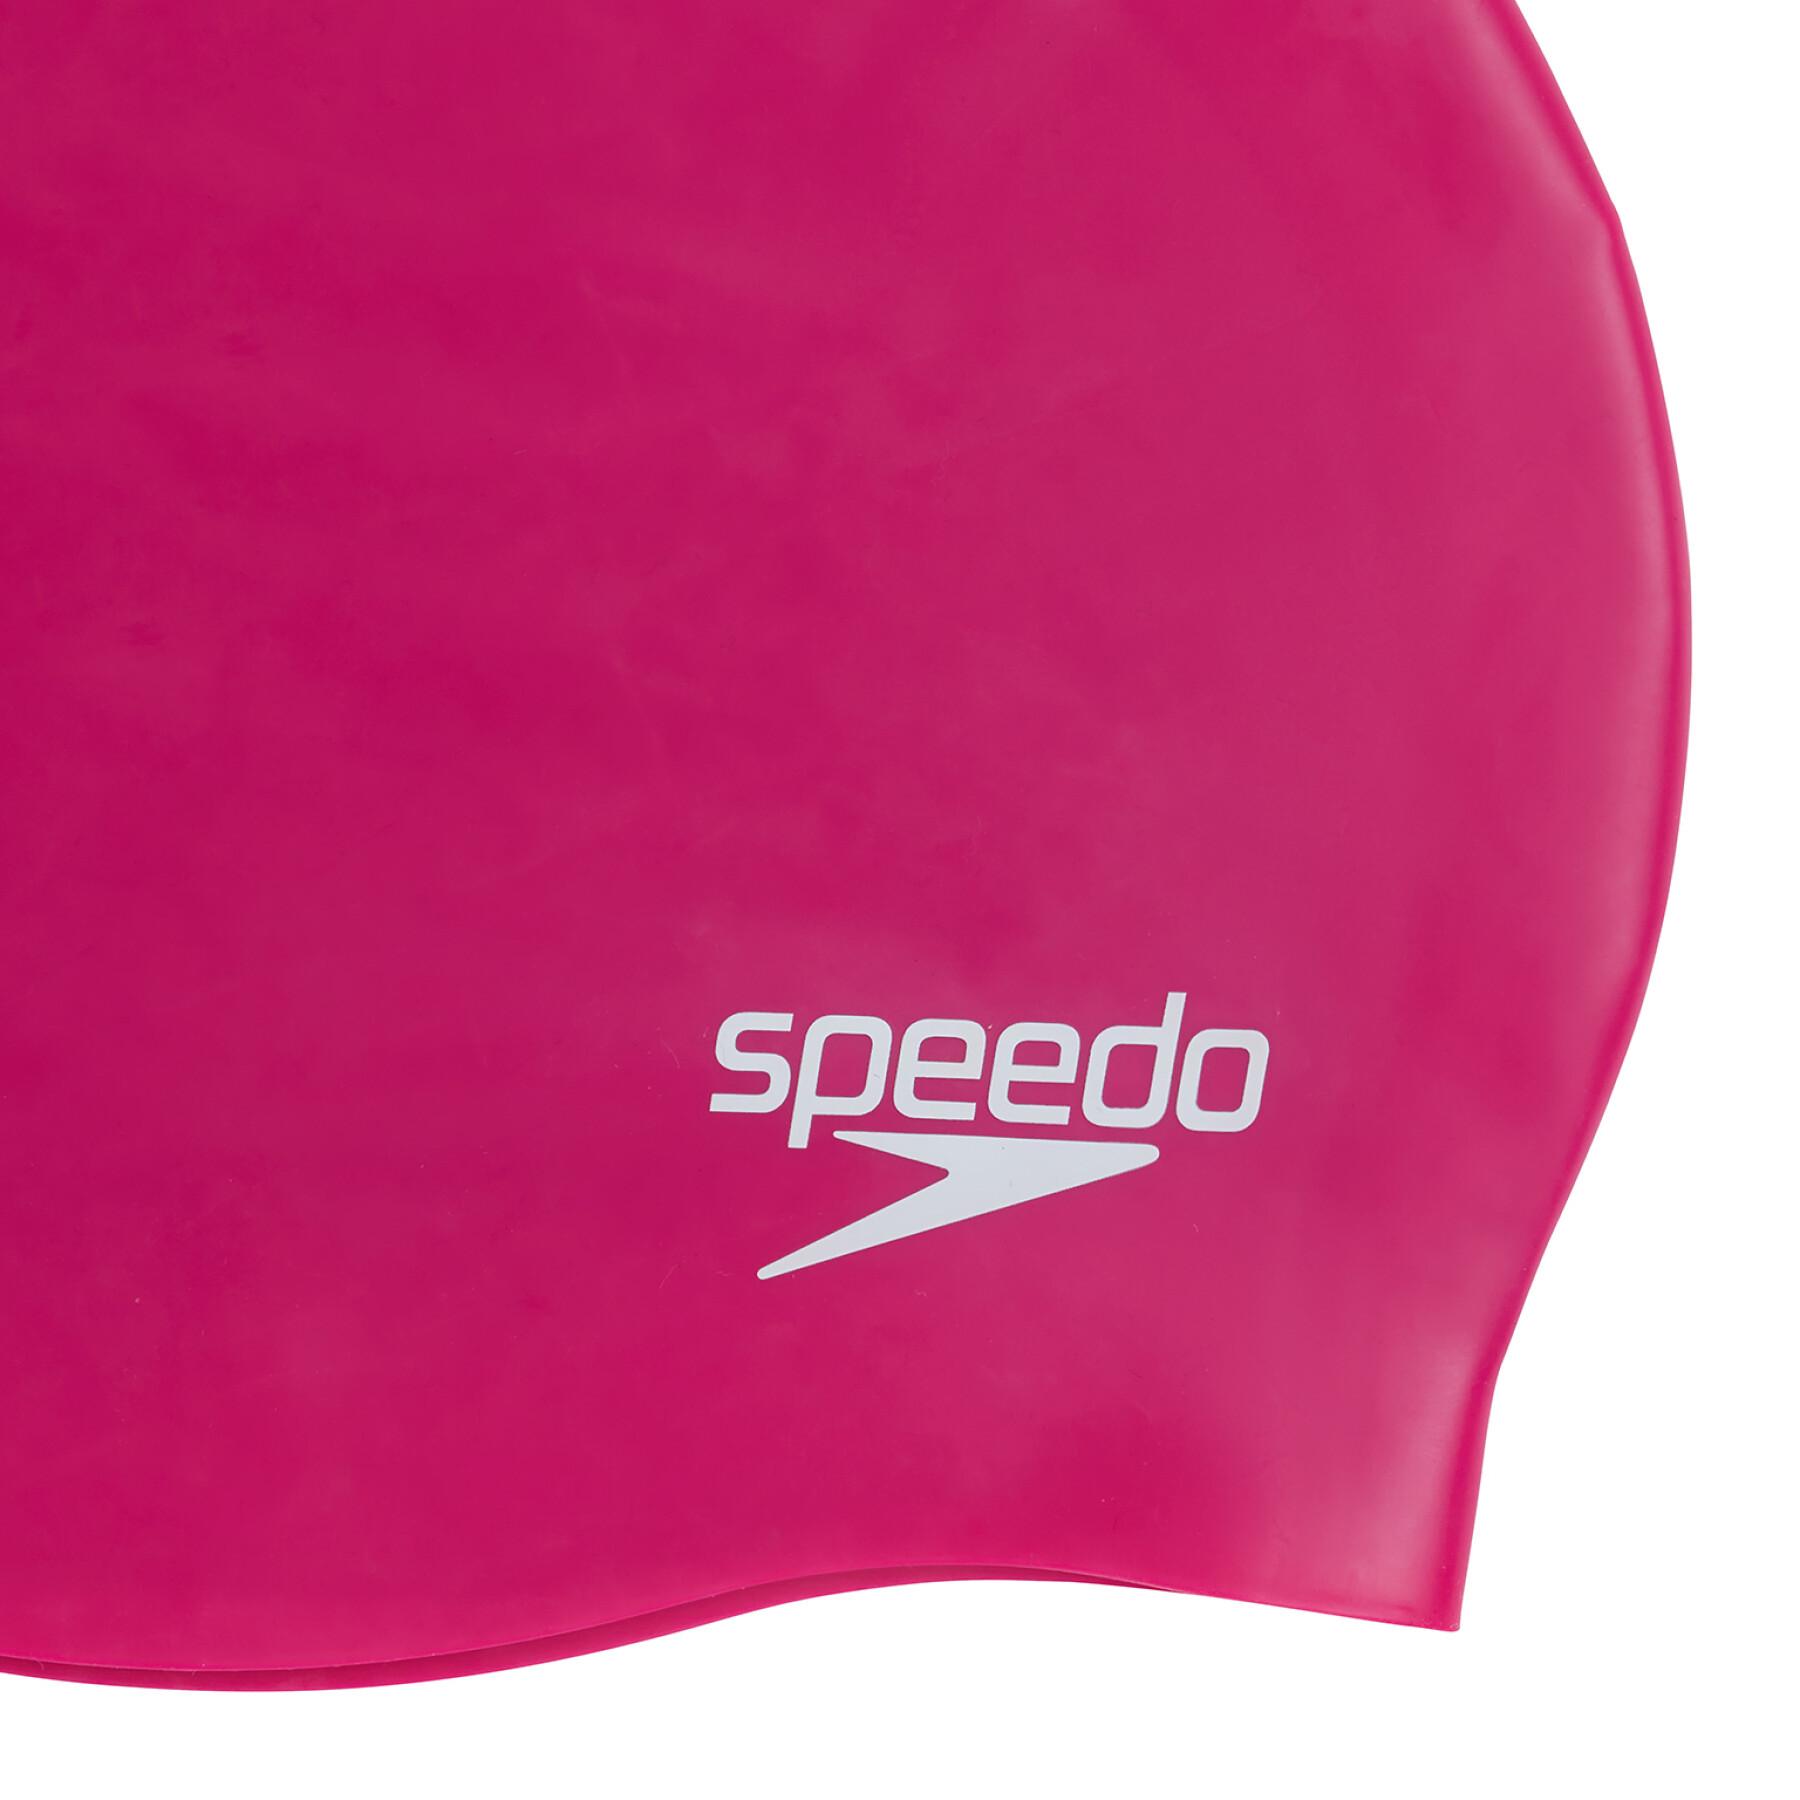 Damski czepek kąpielowy z silikonowym wyprofilowaniem Speedo P12